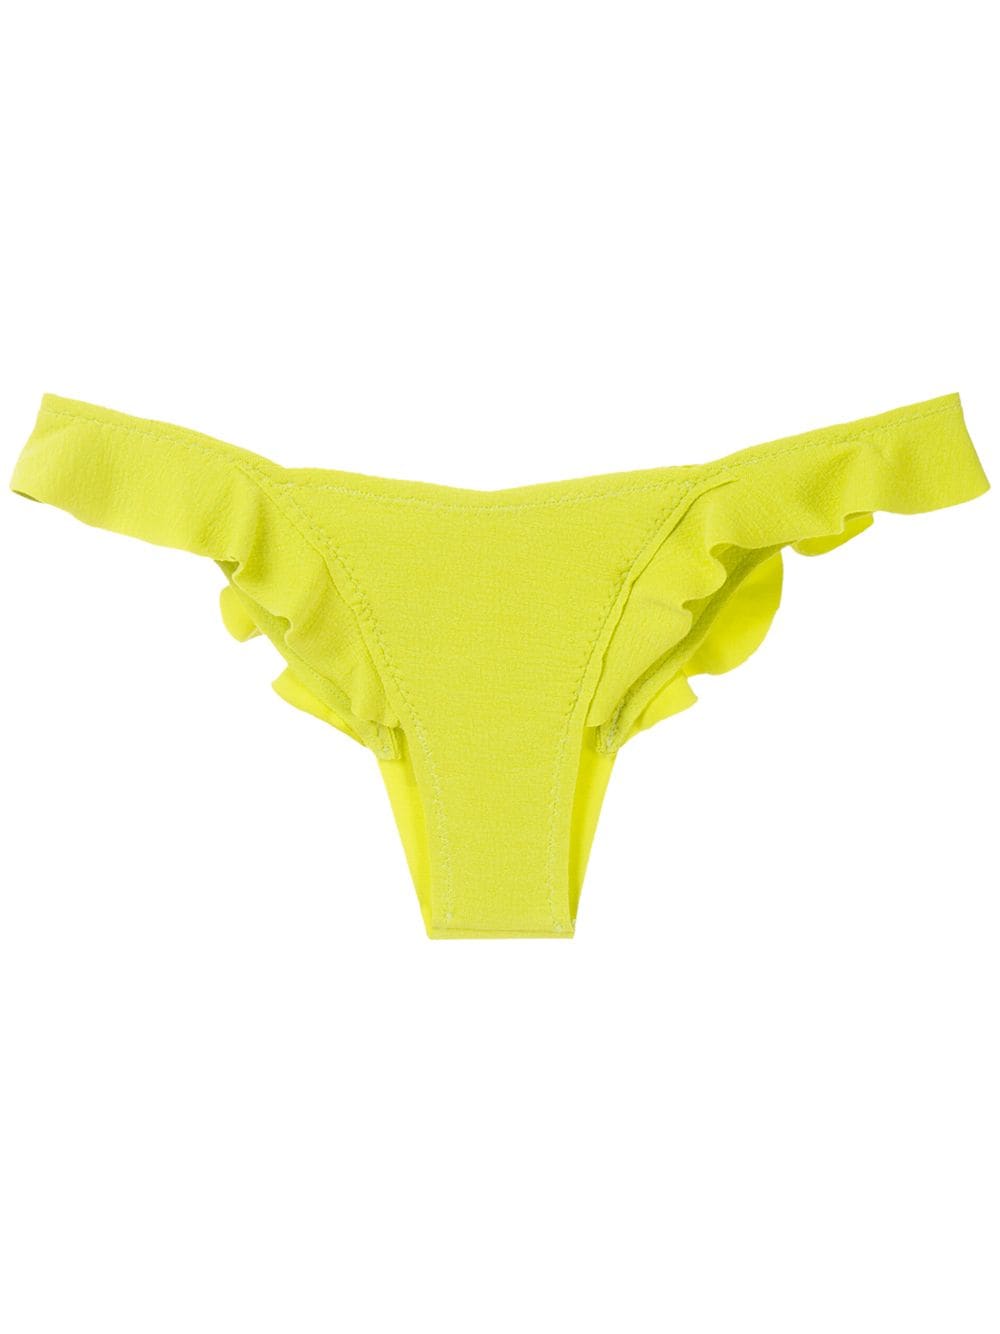 Clube Bossa Winni bikini bottom - Yellow von Clube Bossa